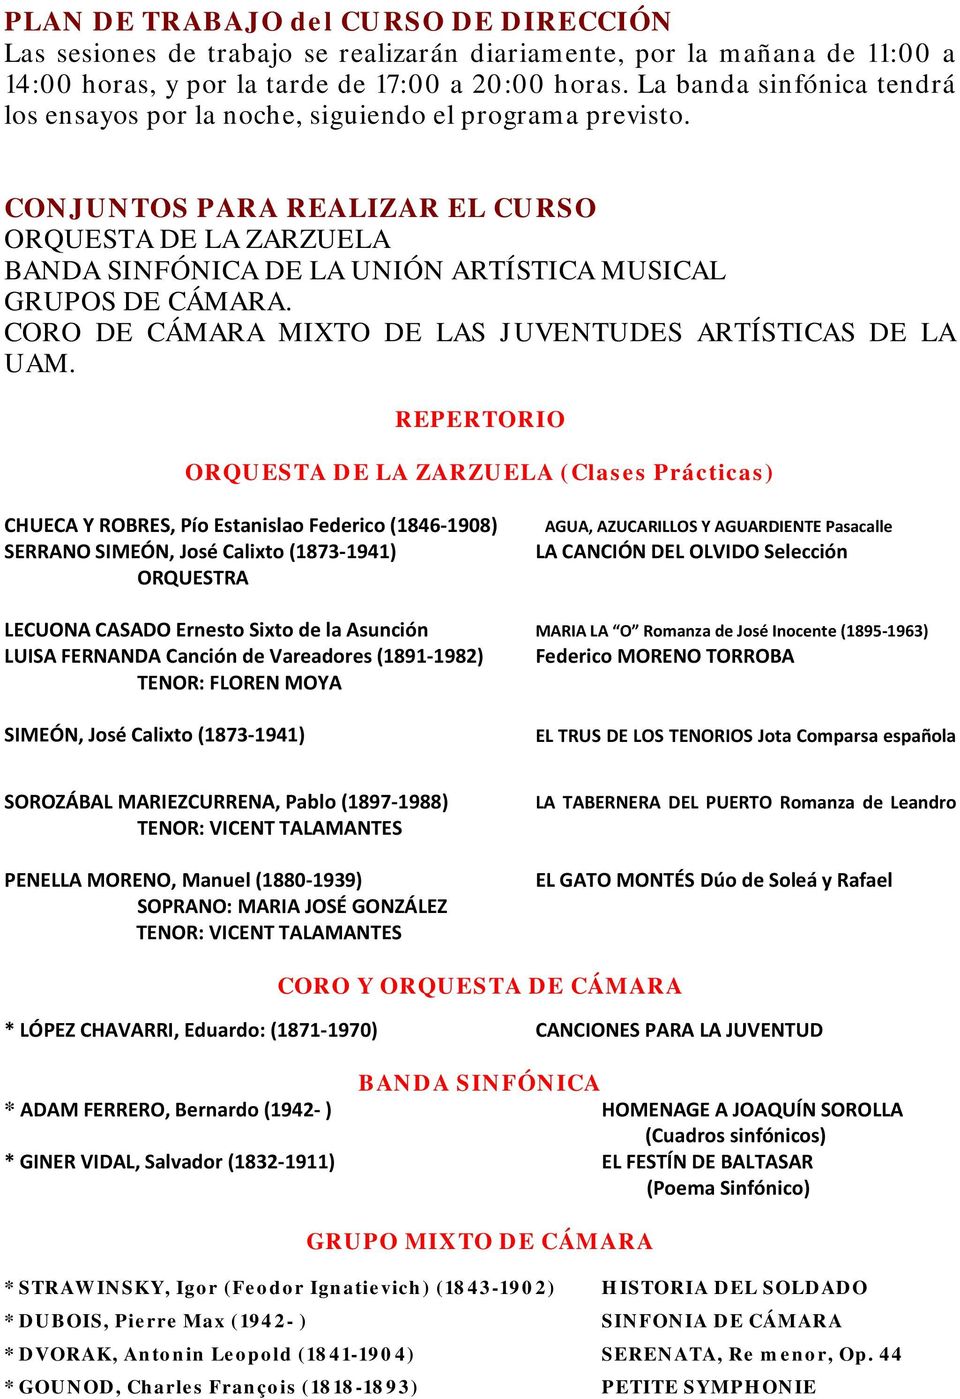 CONJUNTOS PARA REALIZAR EL CURSO ORQUESTA DE LA ZARZUELA BANDA SINFÓNICA DE LA UNIÓN ARTÍSTICA MUSICAL GRUPOS DE CÁMARA. CORO DE CÁMARA MIXTO DE LAS JUVENTUDES ARTÍSTICAS DE LA UAM.